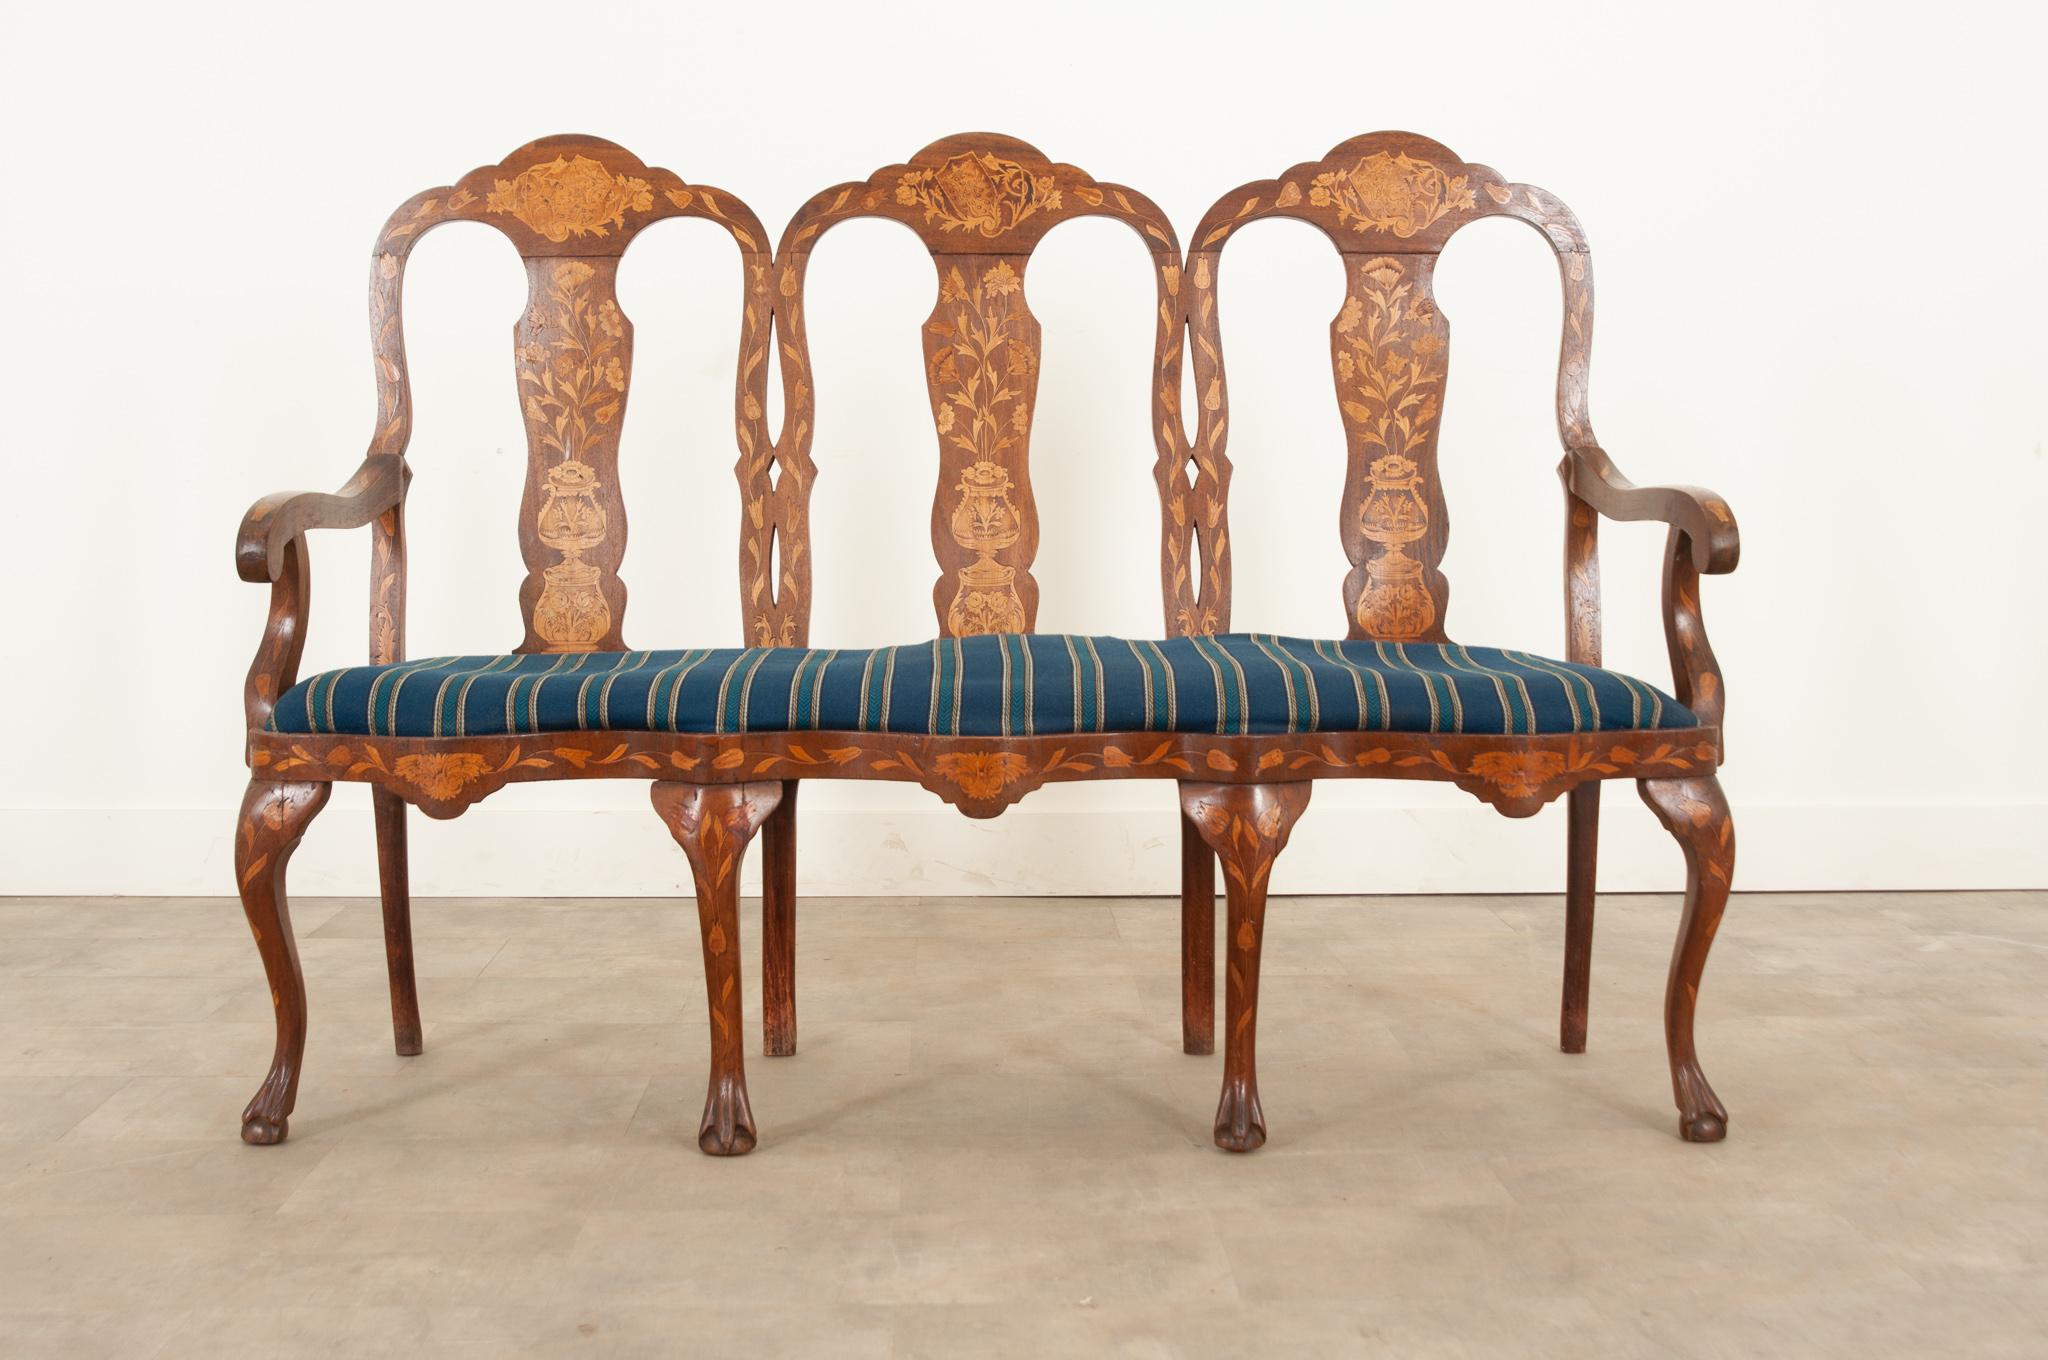 Dieses Dreisitzer-Sofa im holländischen Rokokostil ist eine wunderbare Ergänzung für jede Einrichtung. Hergestellt im 19. Jahrhundert mit hochwertigen, kunstvollen Intarsienarbeiten. Auf der Oberseite jeder Rückenlehne ist ein gekrönter Löwe in